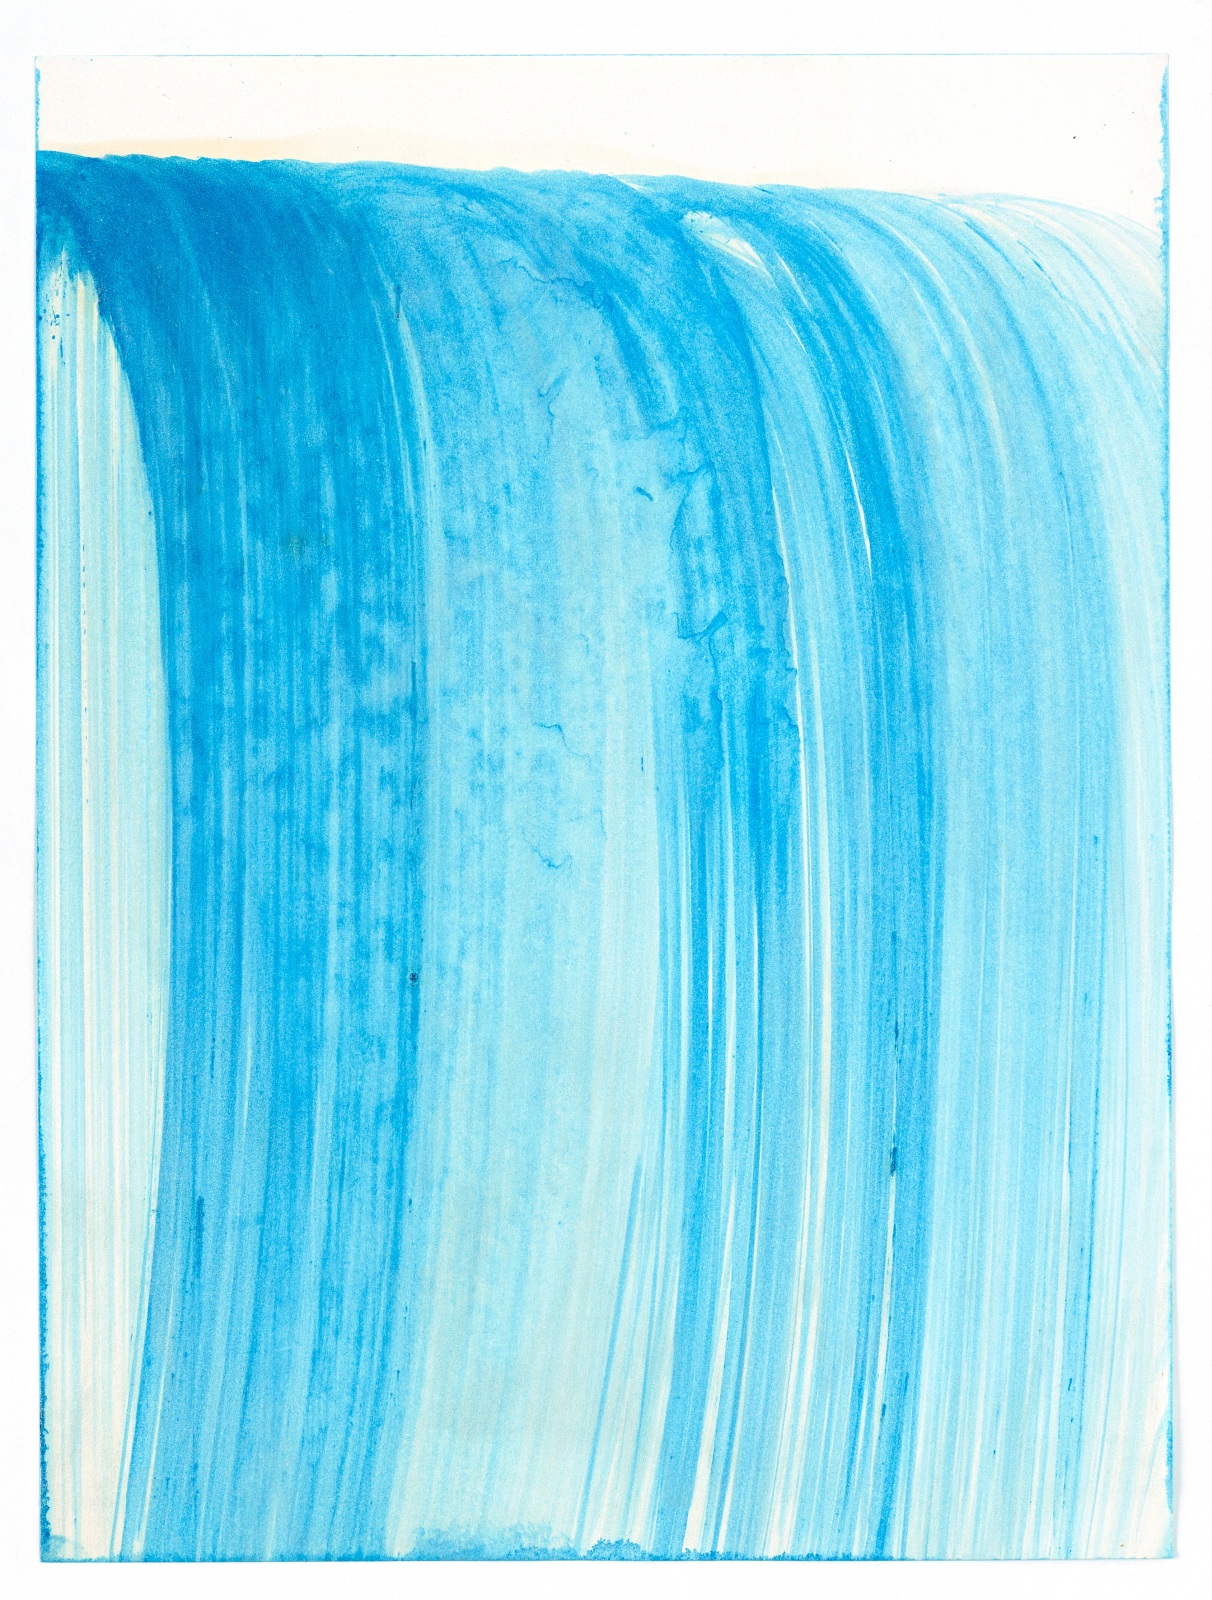 HEIDI BUCHER, Untitled (Wasserzeichnung / Water drawing), 1985